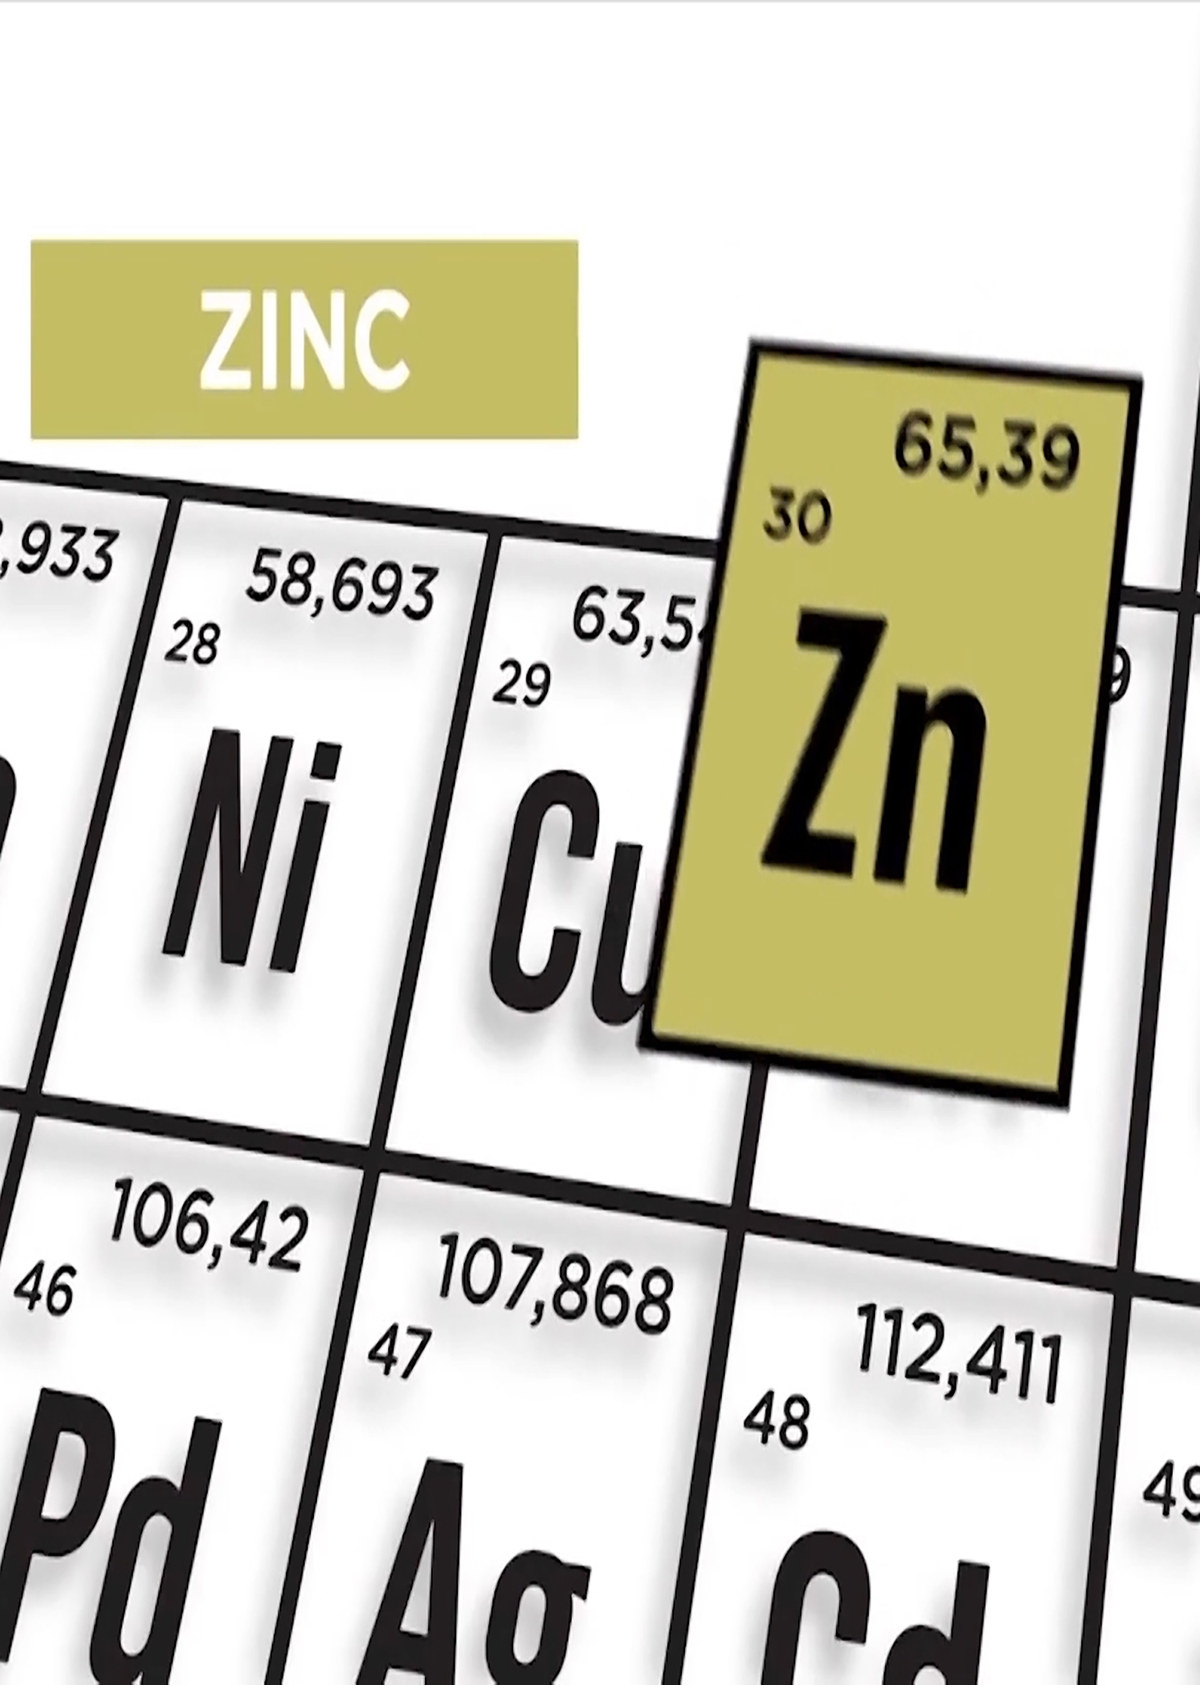 K4910 - Carbon, Gold, Neon, Zirconium, Antimony